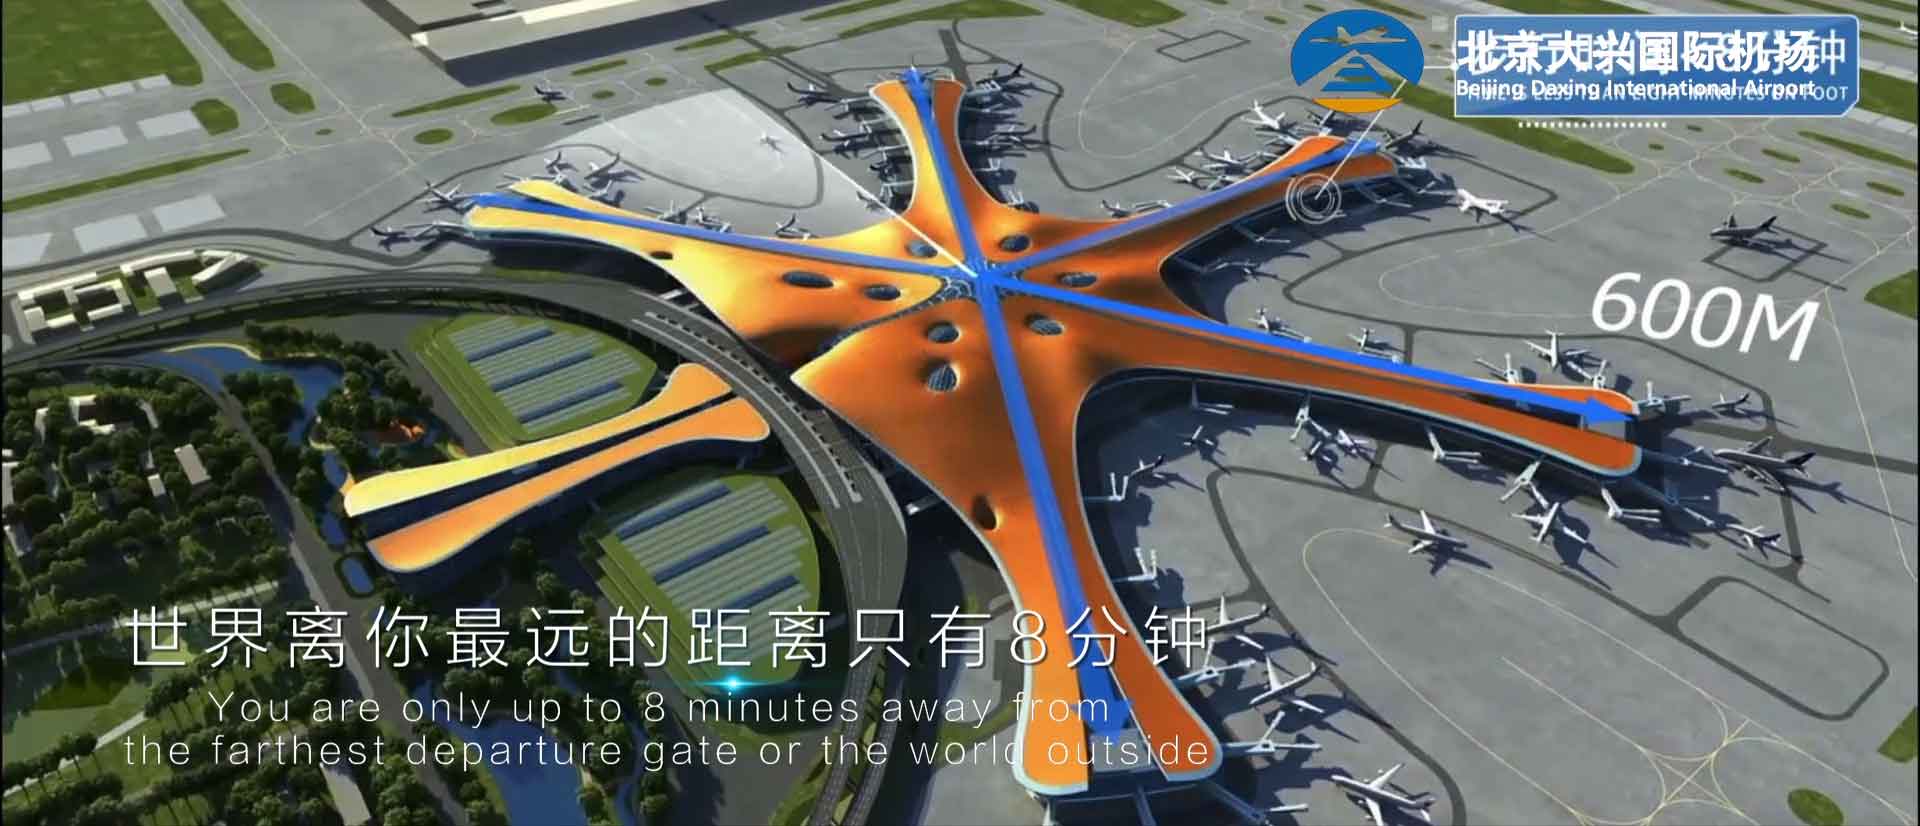 新世界七大奇迹北京大兴机场宣传片背后的故事